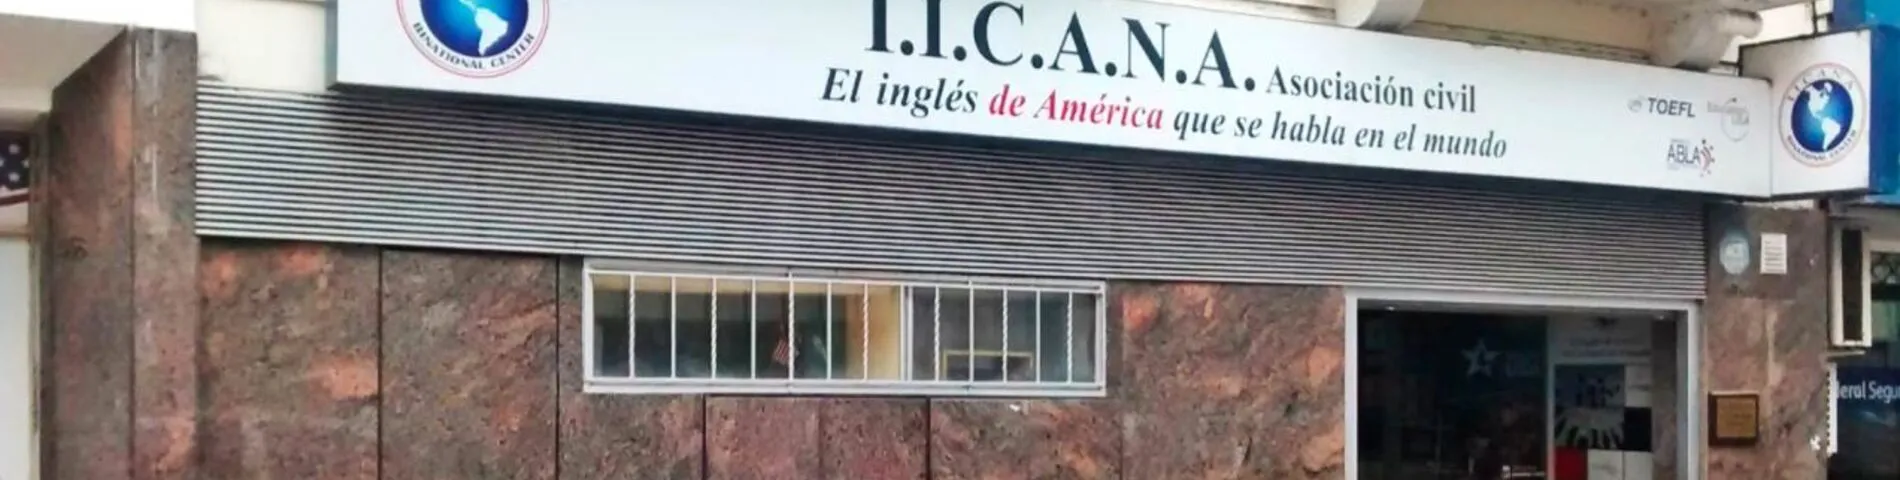 Obrázok školy IICANA - Instituto de Intercambio Cultural Argentino Norteamericano – 1